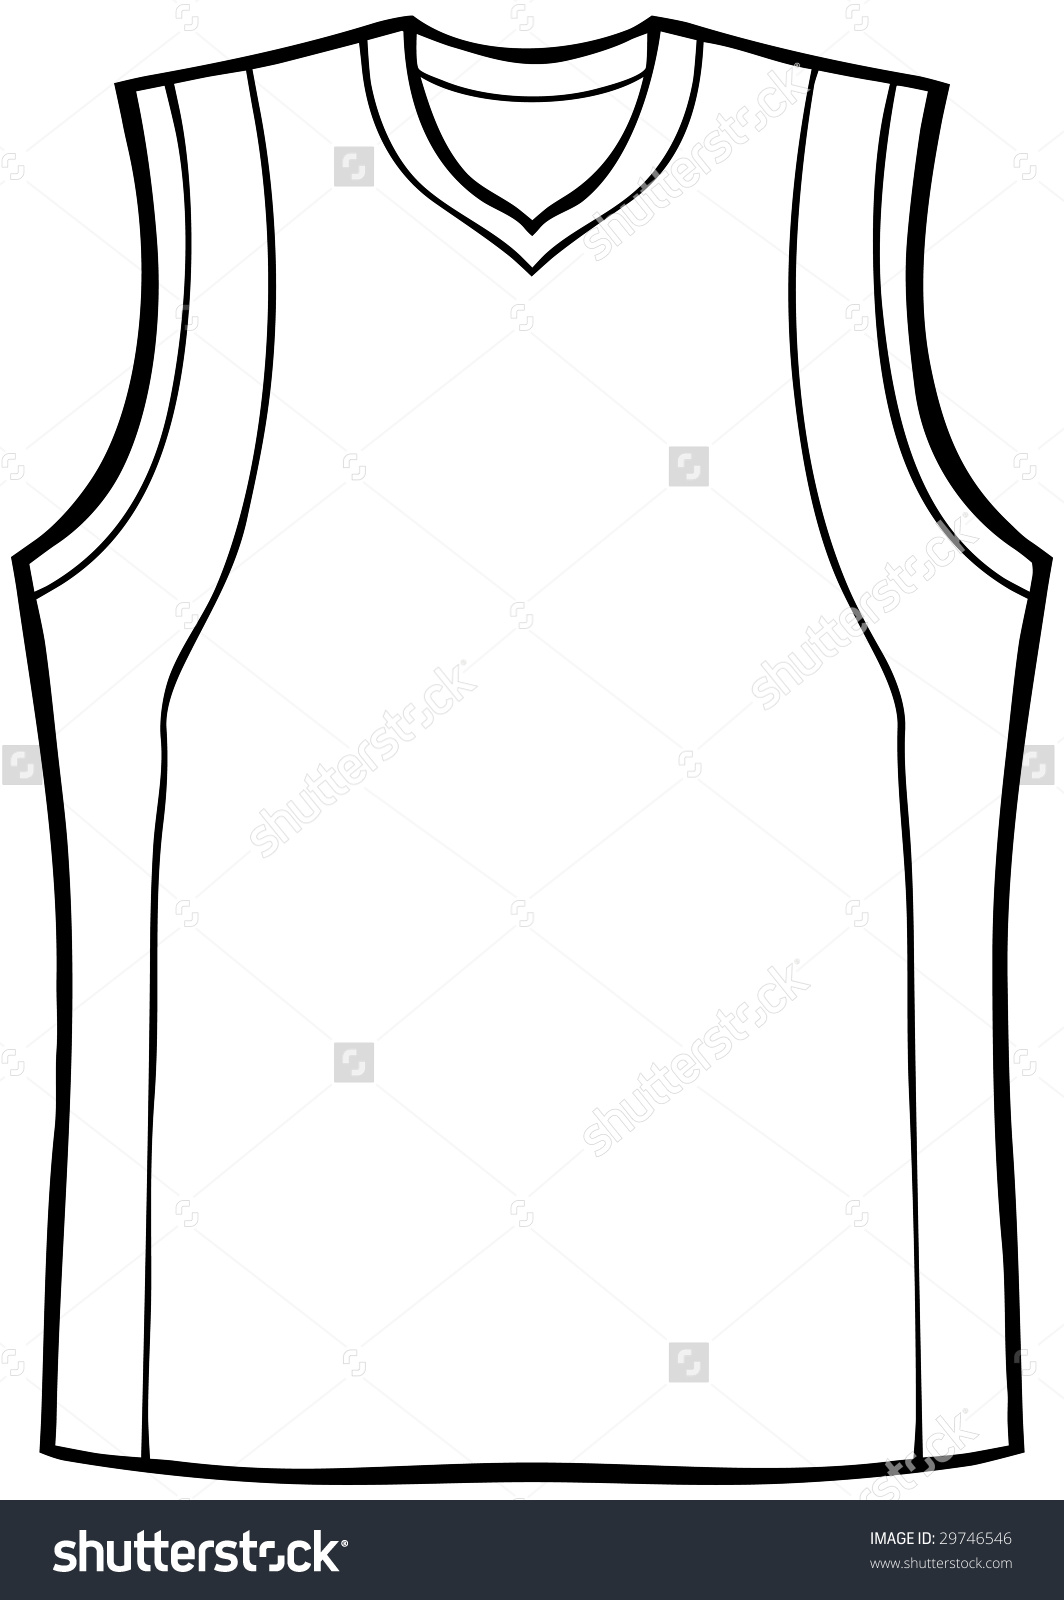 Basketball Jersey Clip Art.